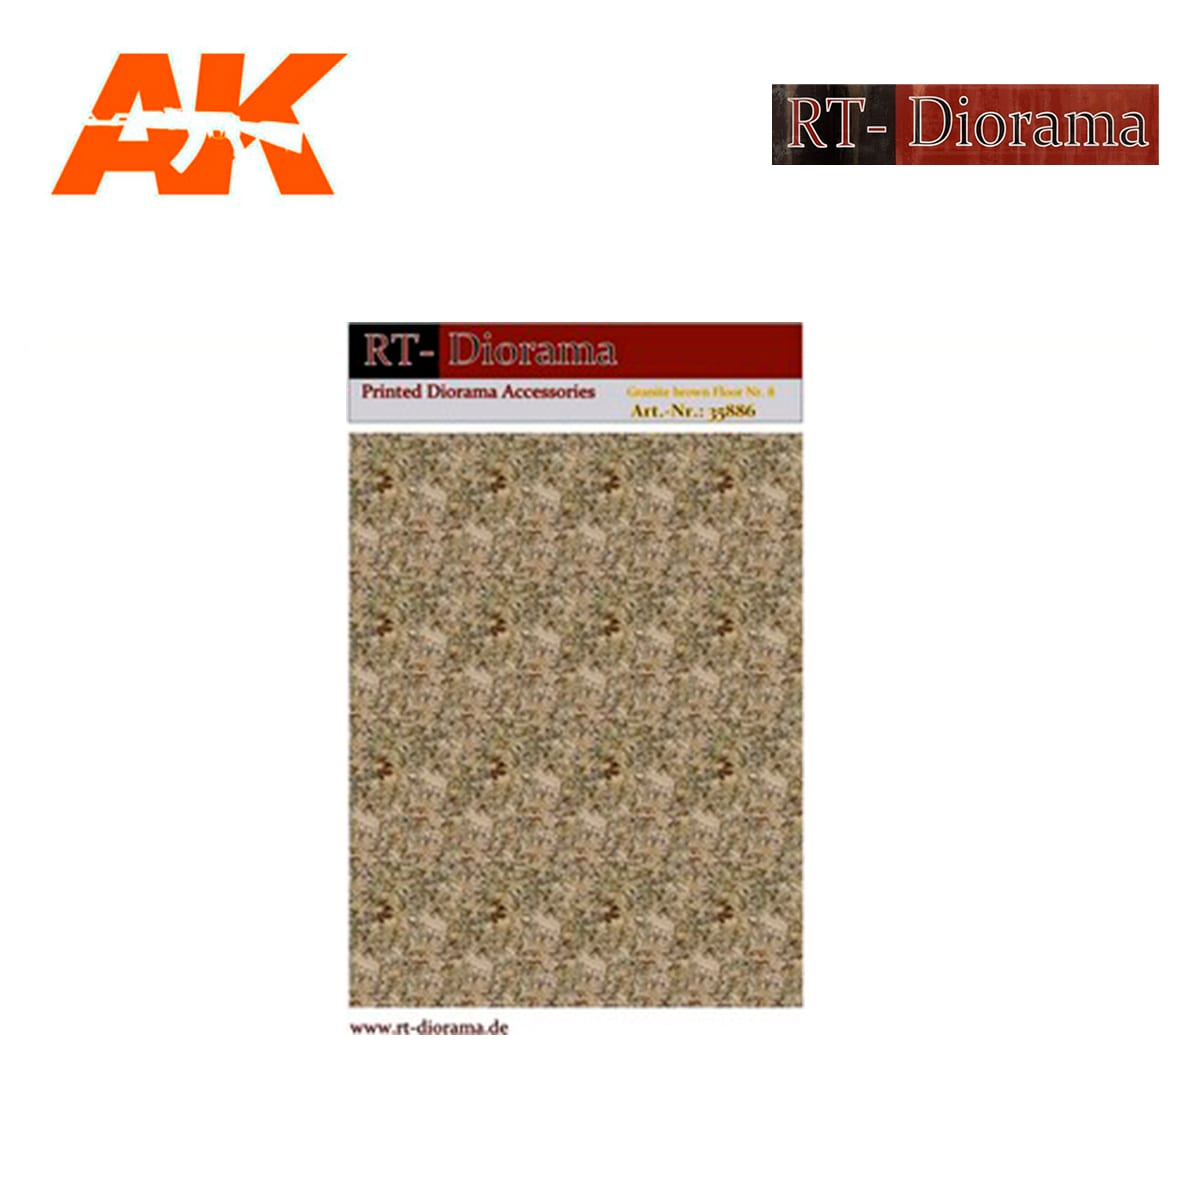 Printed Accesories: Granite brown Floor Nr.8